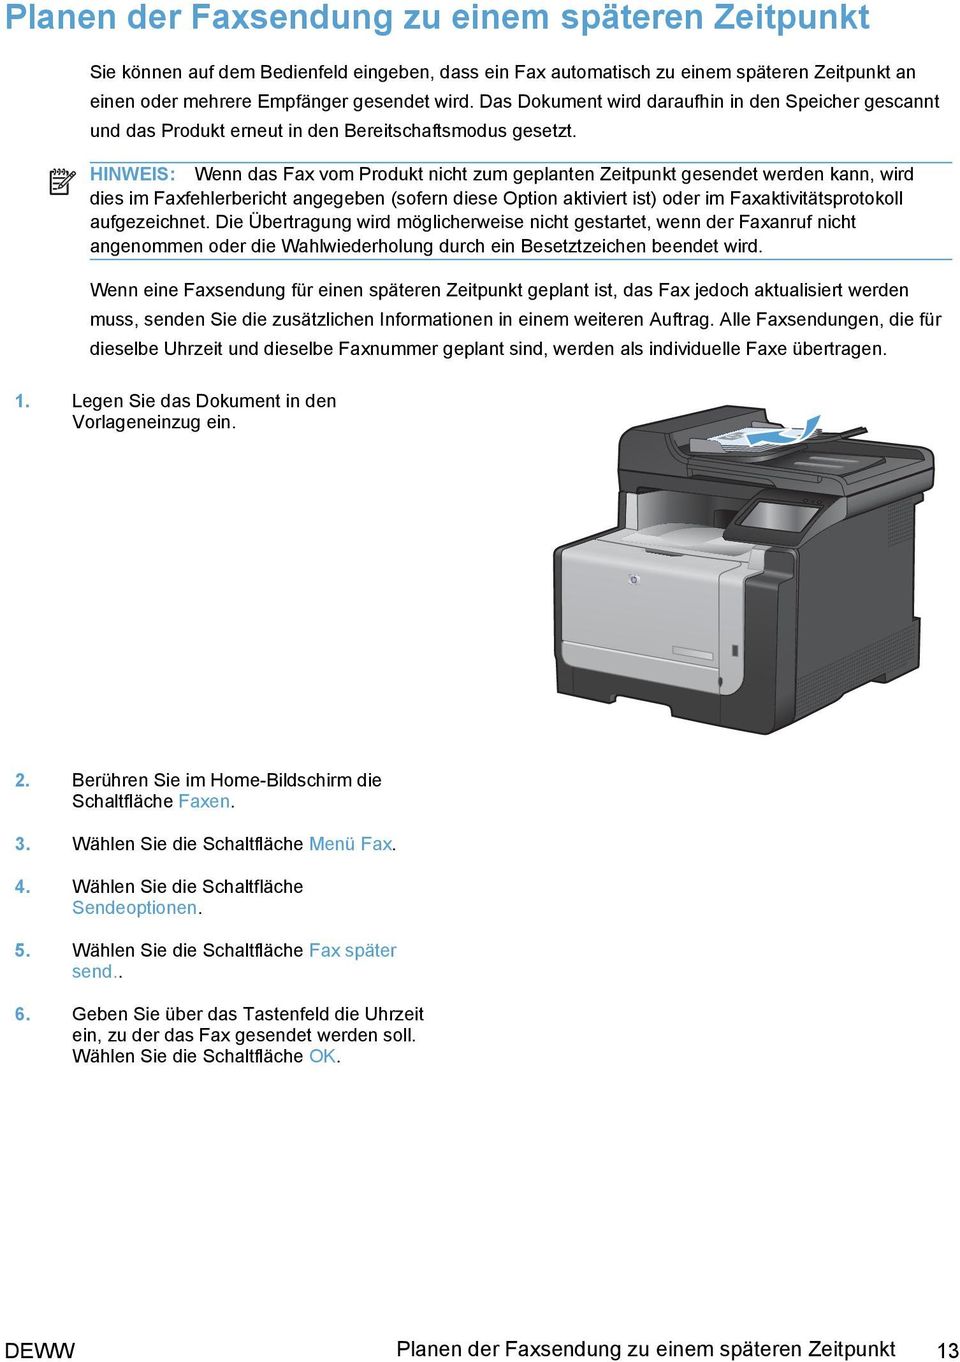 HINWEIS: Wenn das Fax vom Produkt nicht zum geplanten Zeitpunkt gesendet werden kann, wird dies im Faxfehlerbericht angegeben (sofern diese Option aktiviert ist) oder im Faxaktivitätsprotokoll